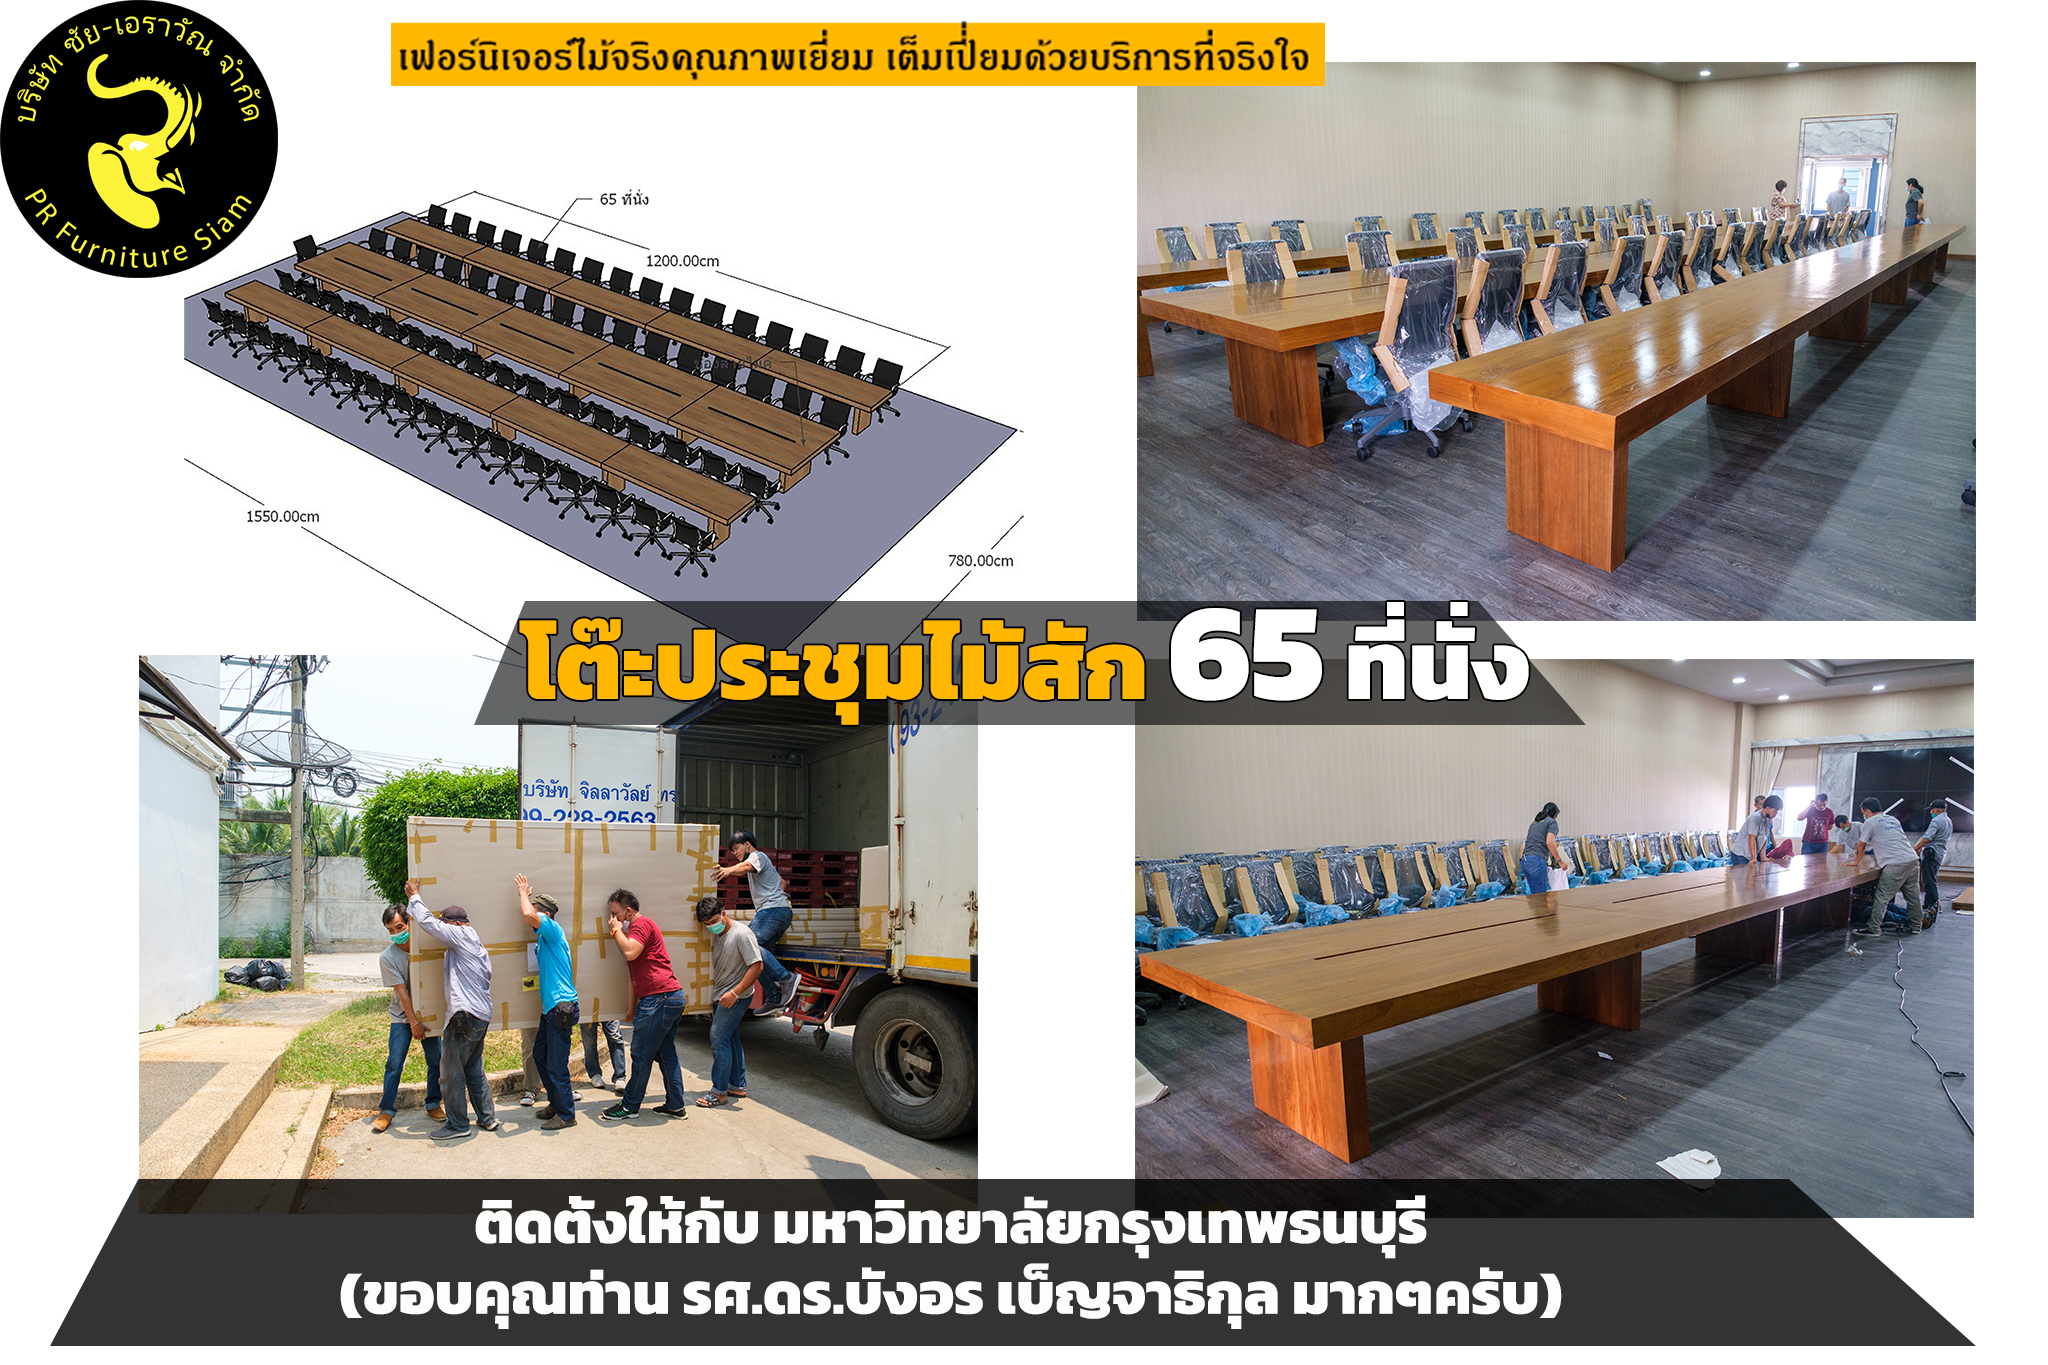 โต๊ะประชุมไม้สักขนาดใหญ่ 65 ที่นั่งที่มหาวิทยาลัยกรุงเทพธนบุรี